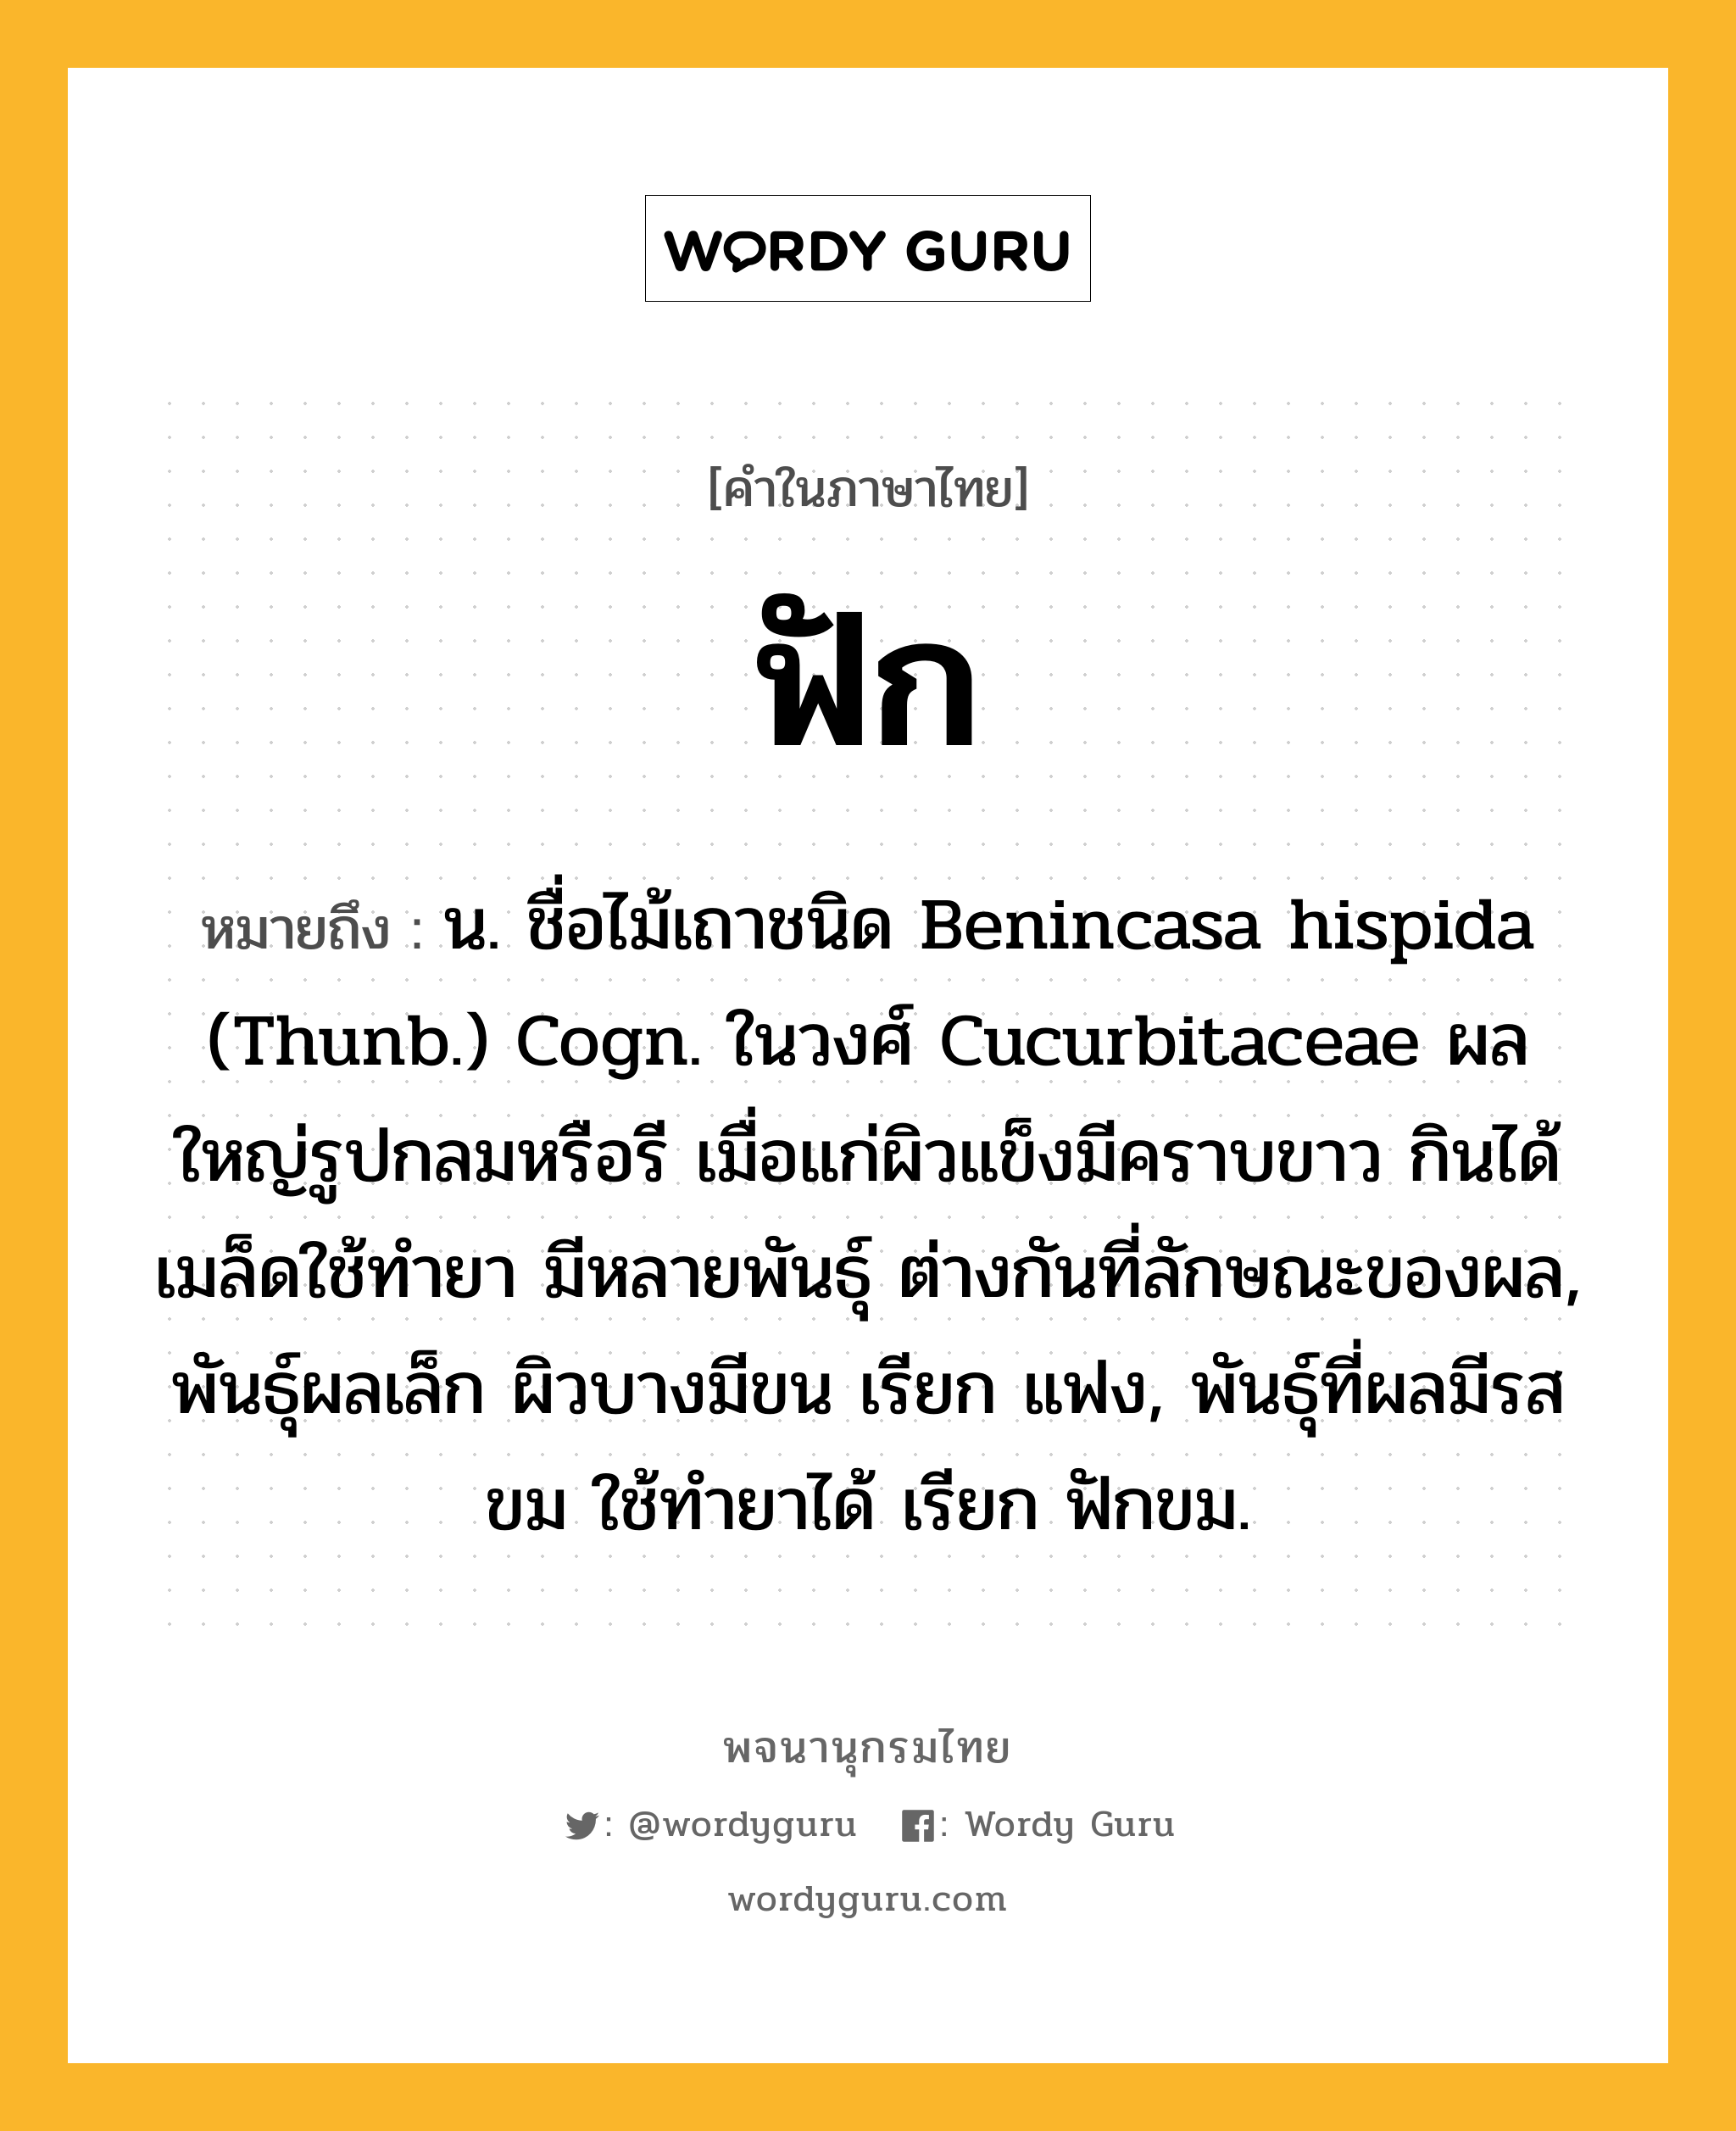 ฟัก ความหมาย หมายถึงอะไร?, คำในภาษาไทย ฟัก หมายถึง น. ชื่อไม้เถาชนิด Benincasa hispida (Thunb.) Cogn. ในวงศ์ Cucurbitaceae ผลใหญ่รูปกลมหรือรี เมื่อแก่ผิวแข็งมีคราบขาว กินได้ เมล็ดใช้ทํายา มีหลายพันธุ์ ต่างกันที่ลักษณะของผล, พันธุ์ผลเล็ก ผิวบางมีขน เรียก แฟง, พันธุ์ที่ผลมีรสขม ใช้ทํายาได้ เรียก ฟักขม.